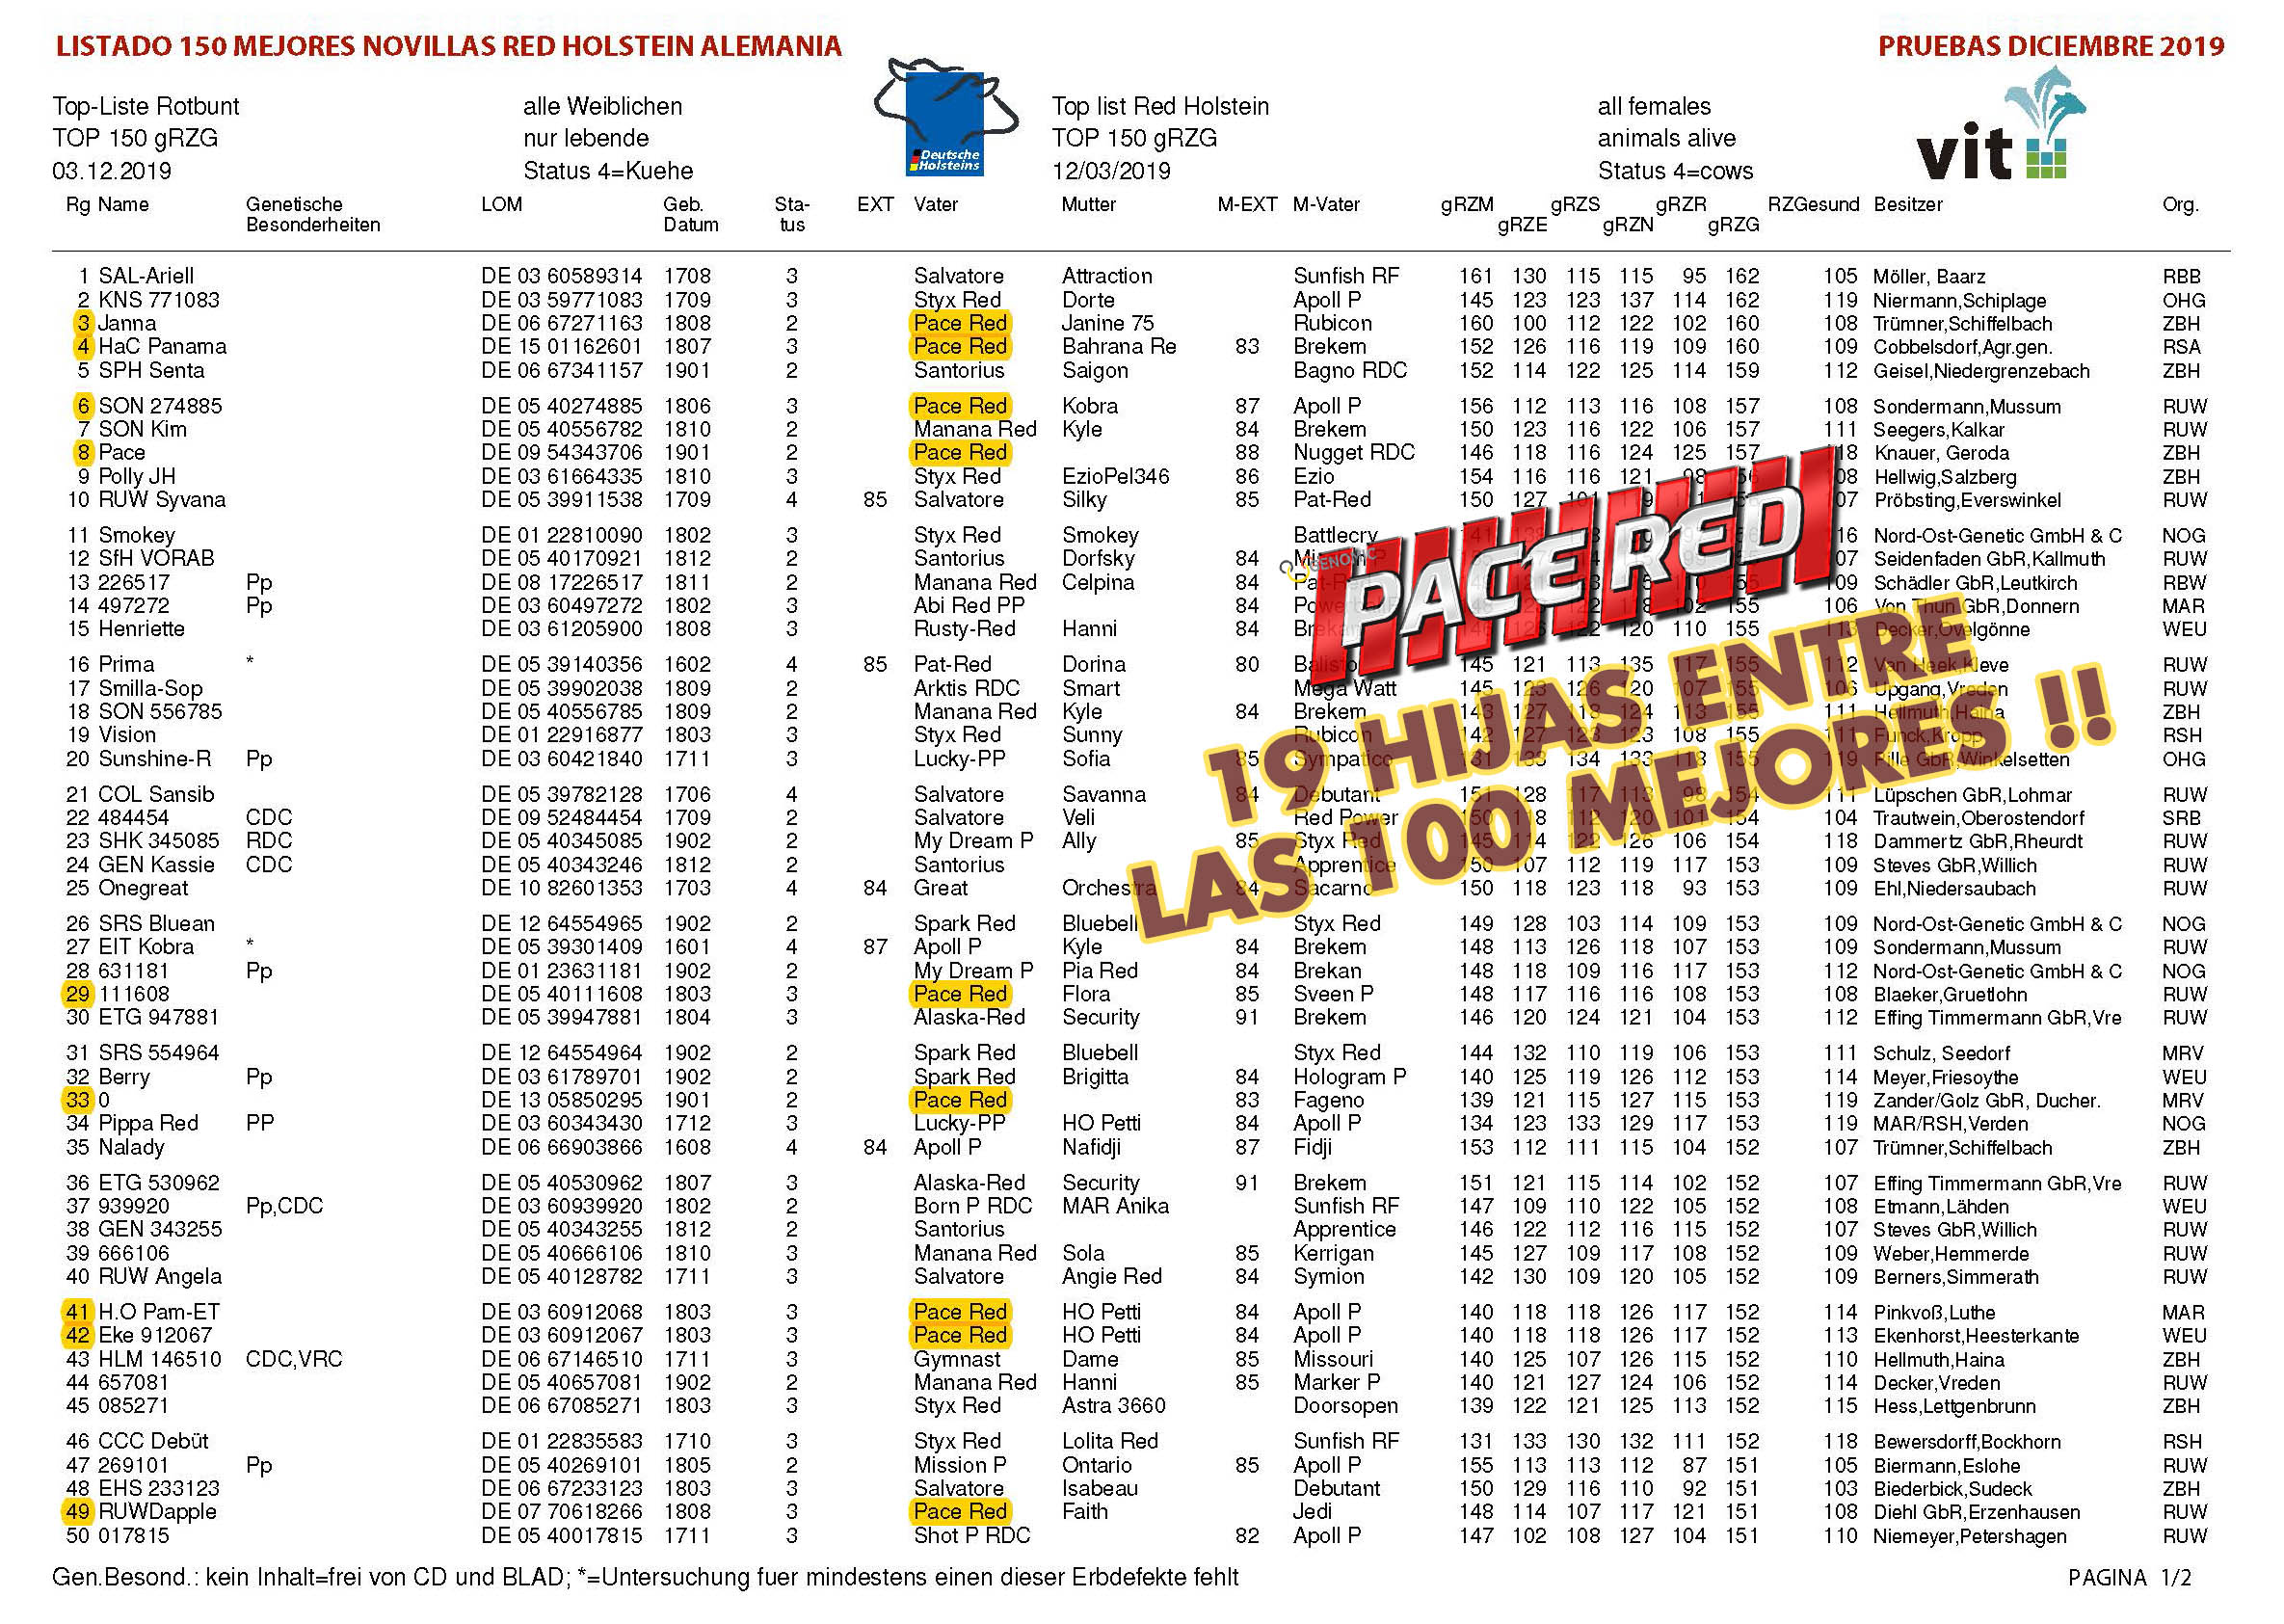 BAS·GGI - PACE RED - 19 hijas entre las 100 mejores · GGI-SPERMEX !!